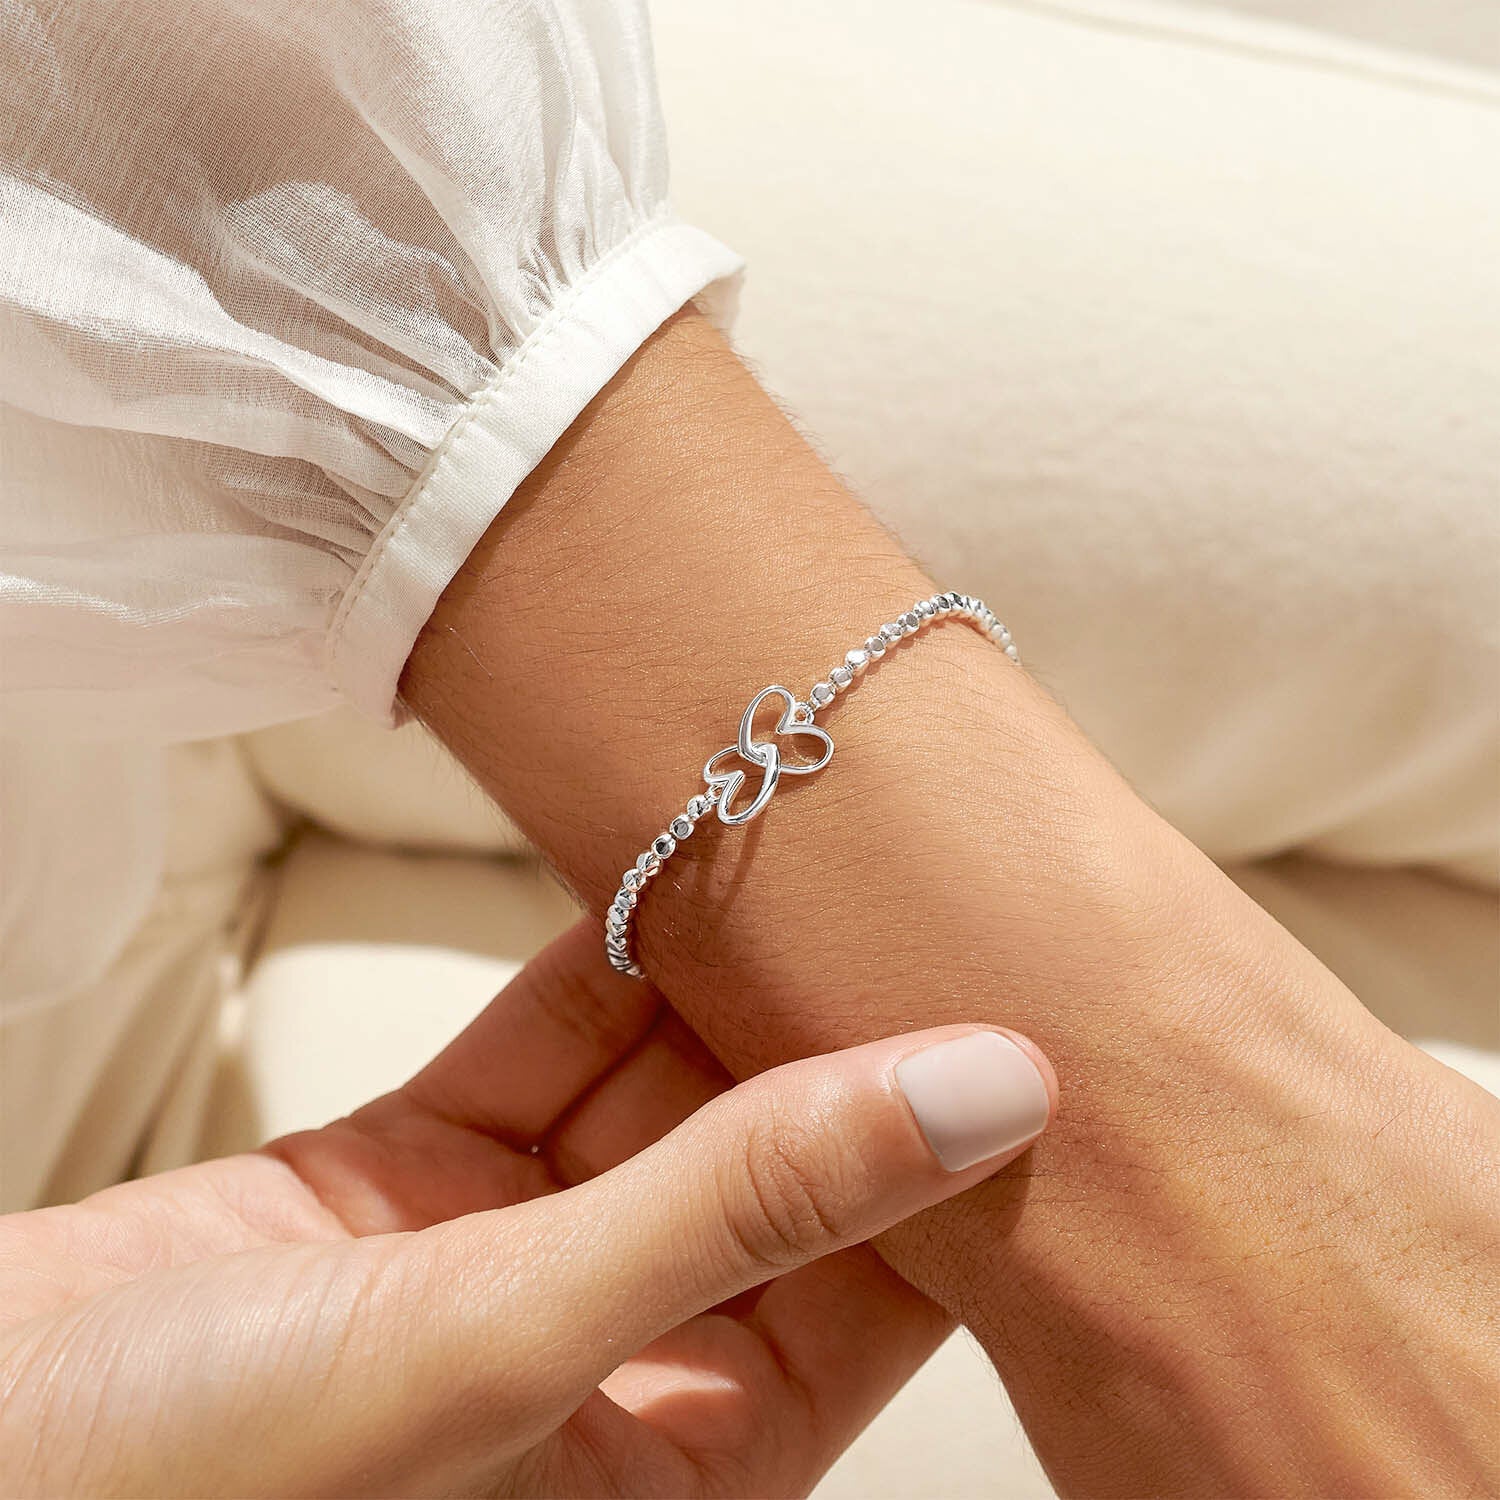 Forever Yours 'Lovely Granddaughter' Bracelet - Joma jewellery